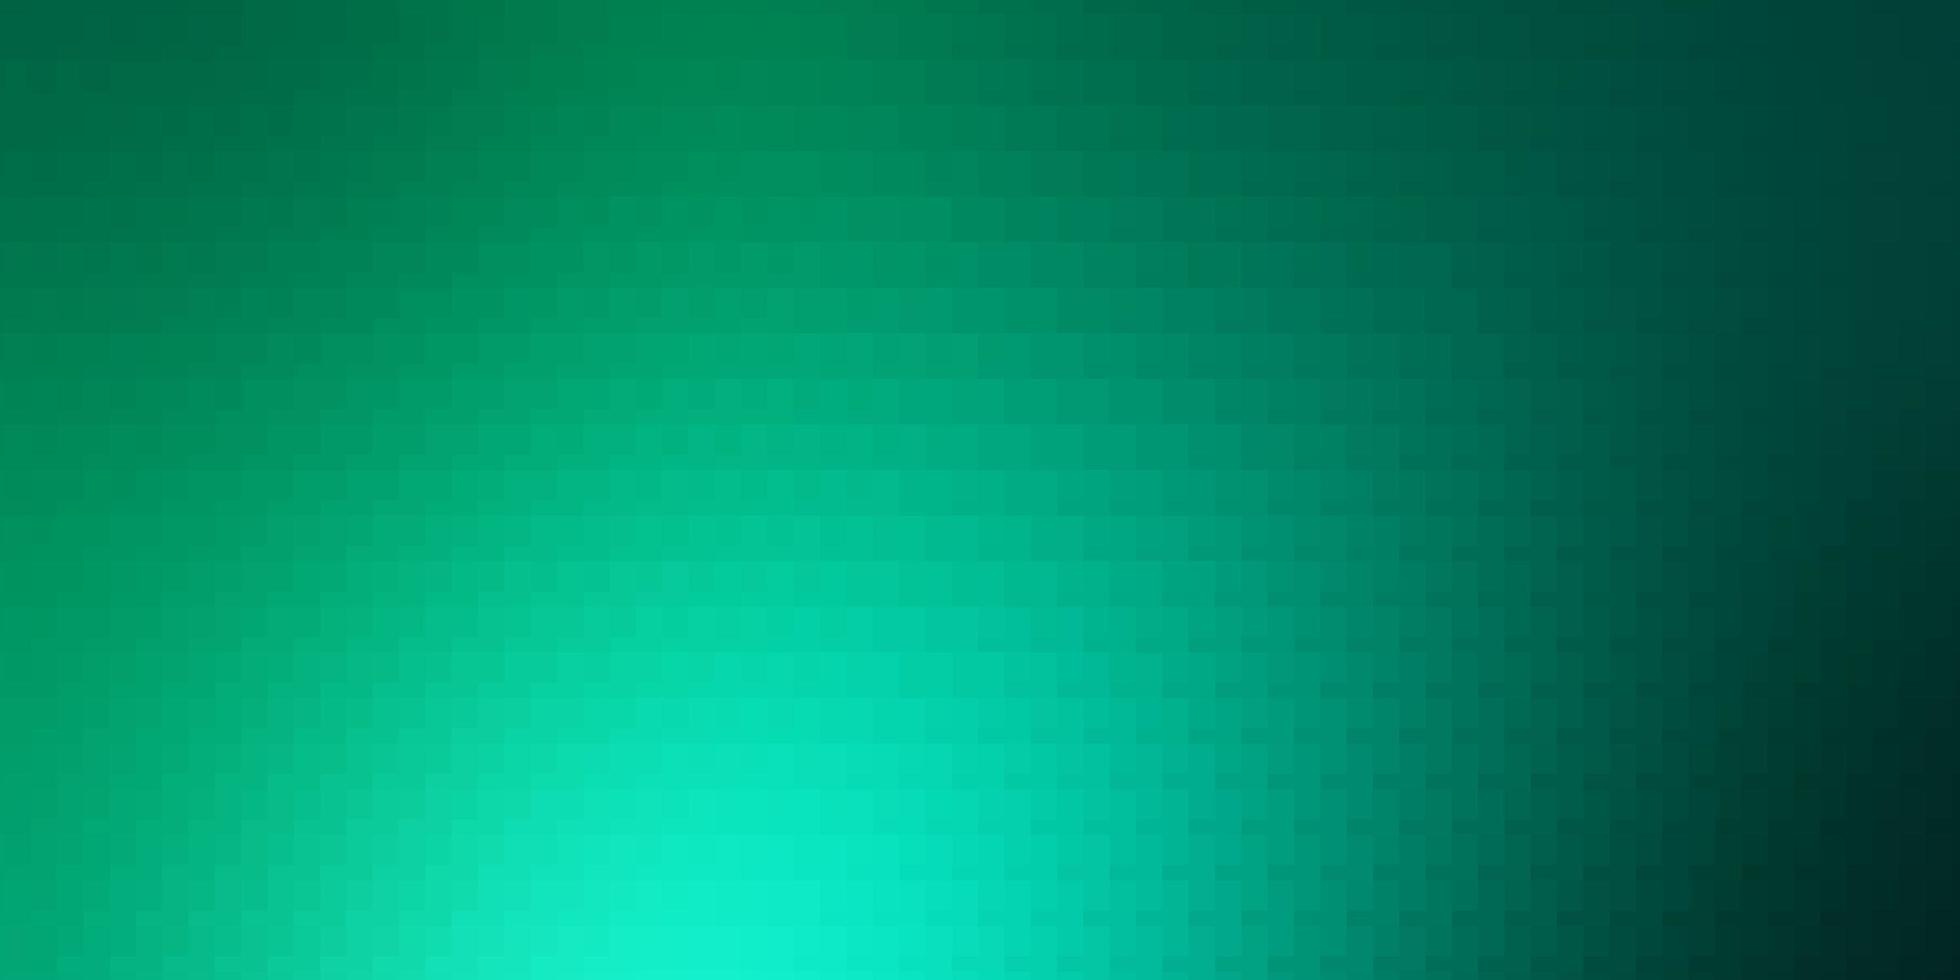 trama vettoriale verde chiaro in illustrazione in stile rettangolare con una serie di pattern di rettangoli sfumati per annunci pubblicitari